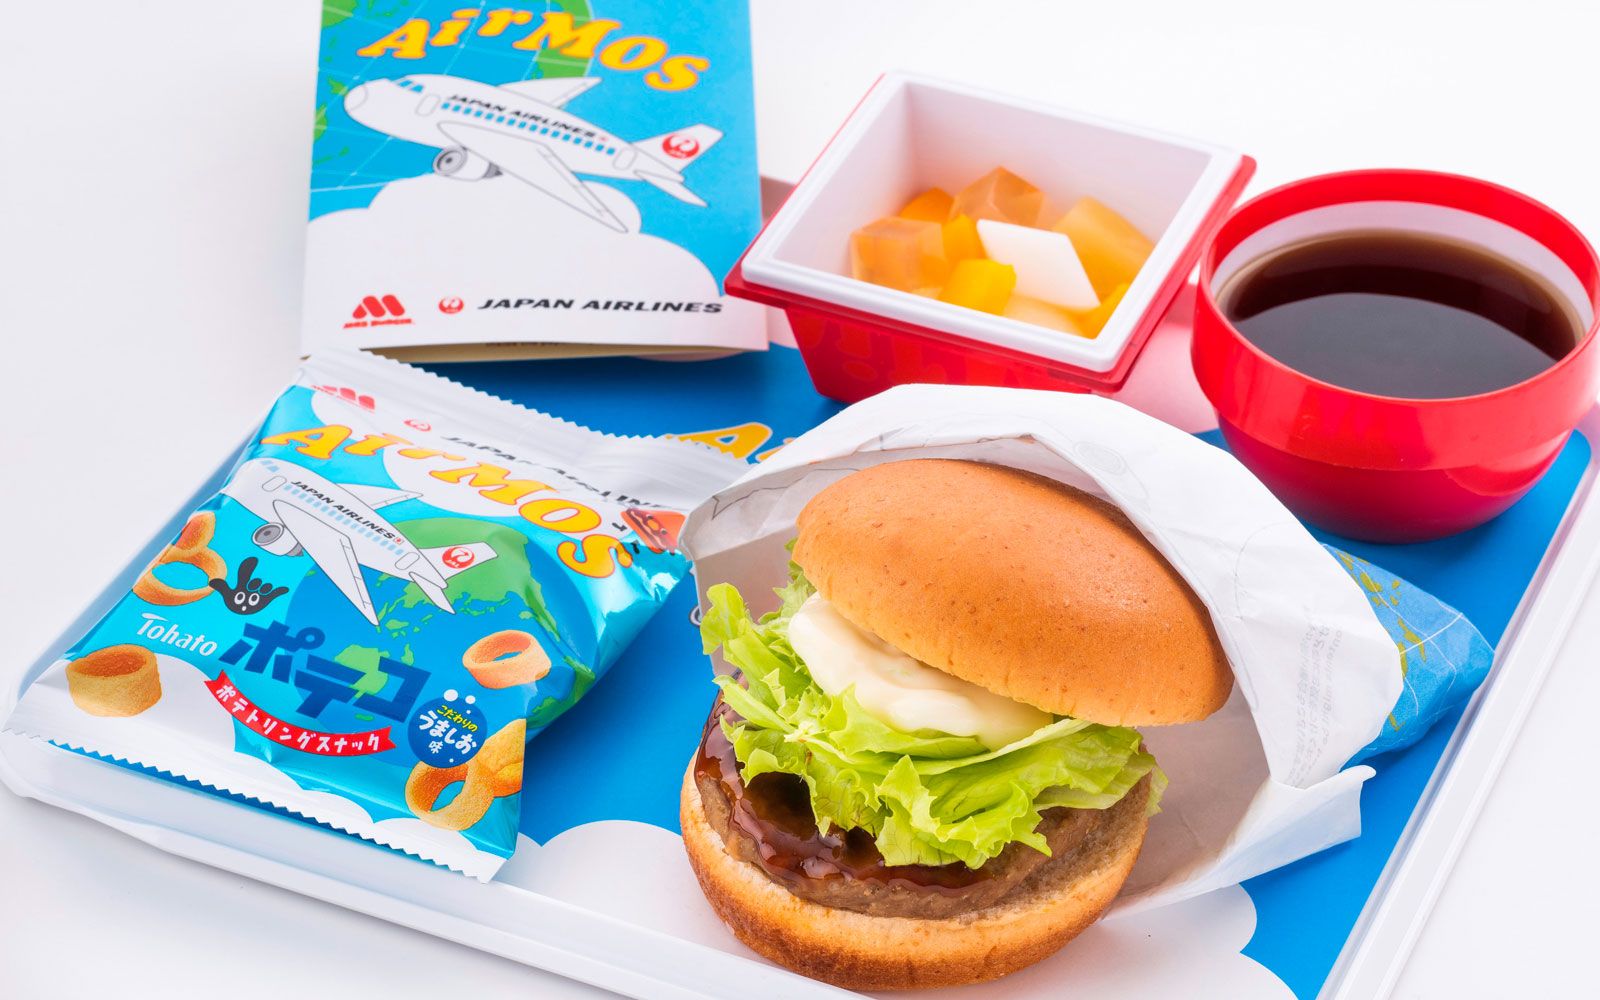 Genießen Sie einen Teriyaki-Burger vom beliebten Fast-Food-Burger-Unternehmen MOS Burger bei Japan Airlines.